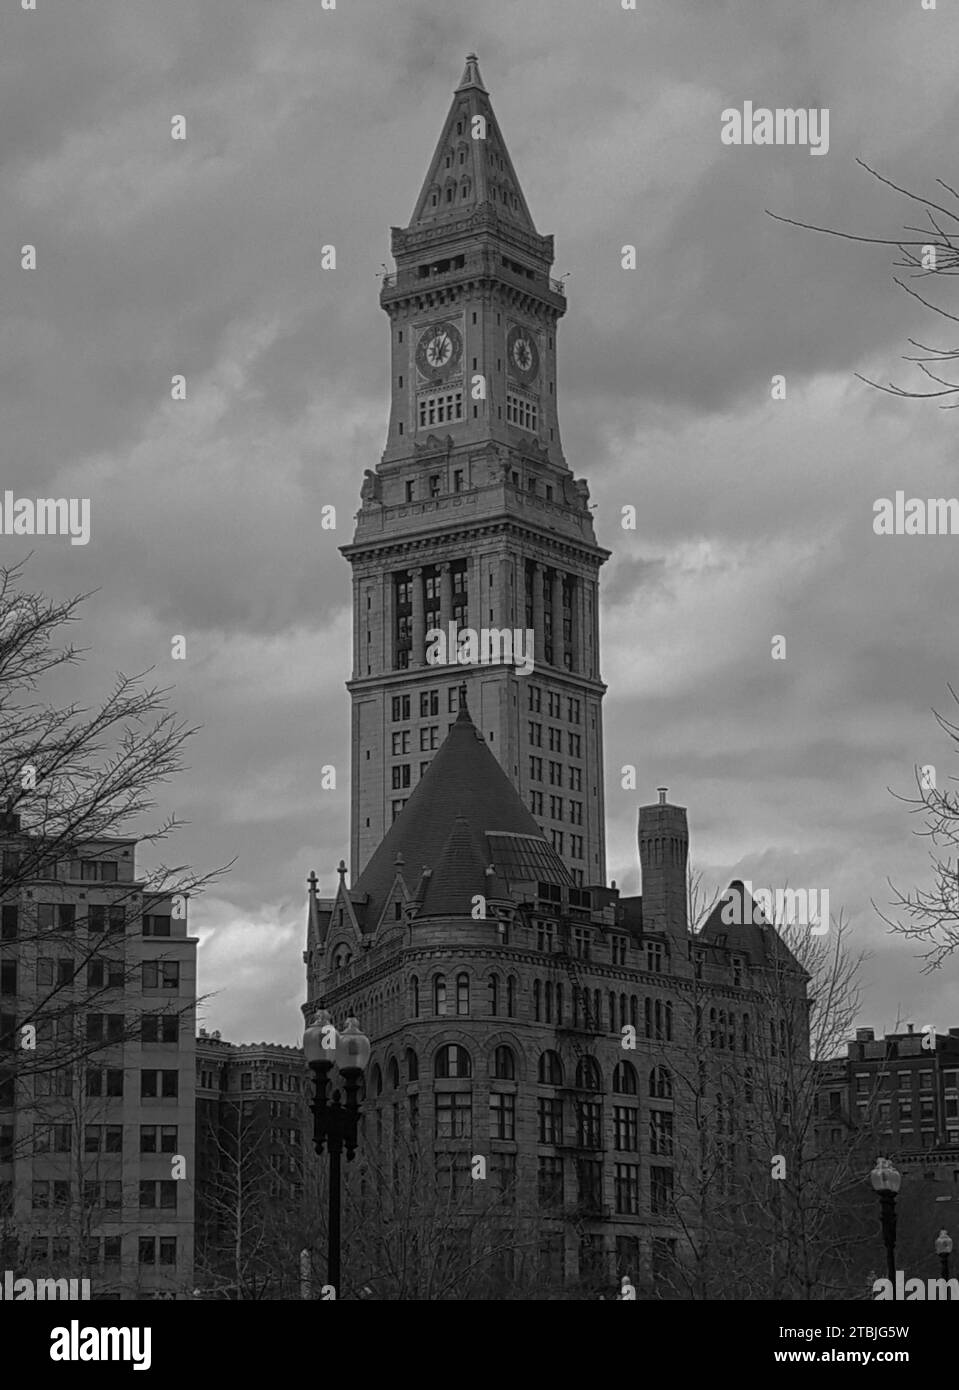 Uno splendido paesaggio urbano caratterizzato da un grande edificio con una torre dell'orologio sullo sfondo, illuminato da una calda luce naturale del mattino Foto Stock